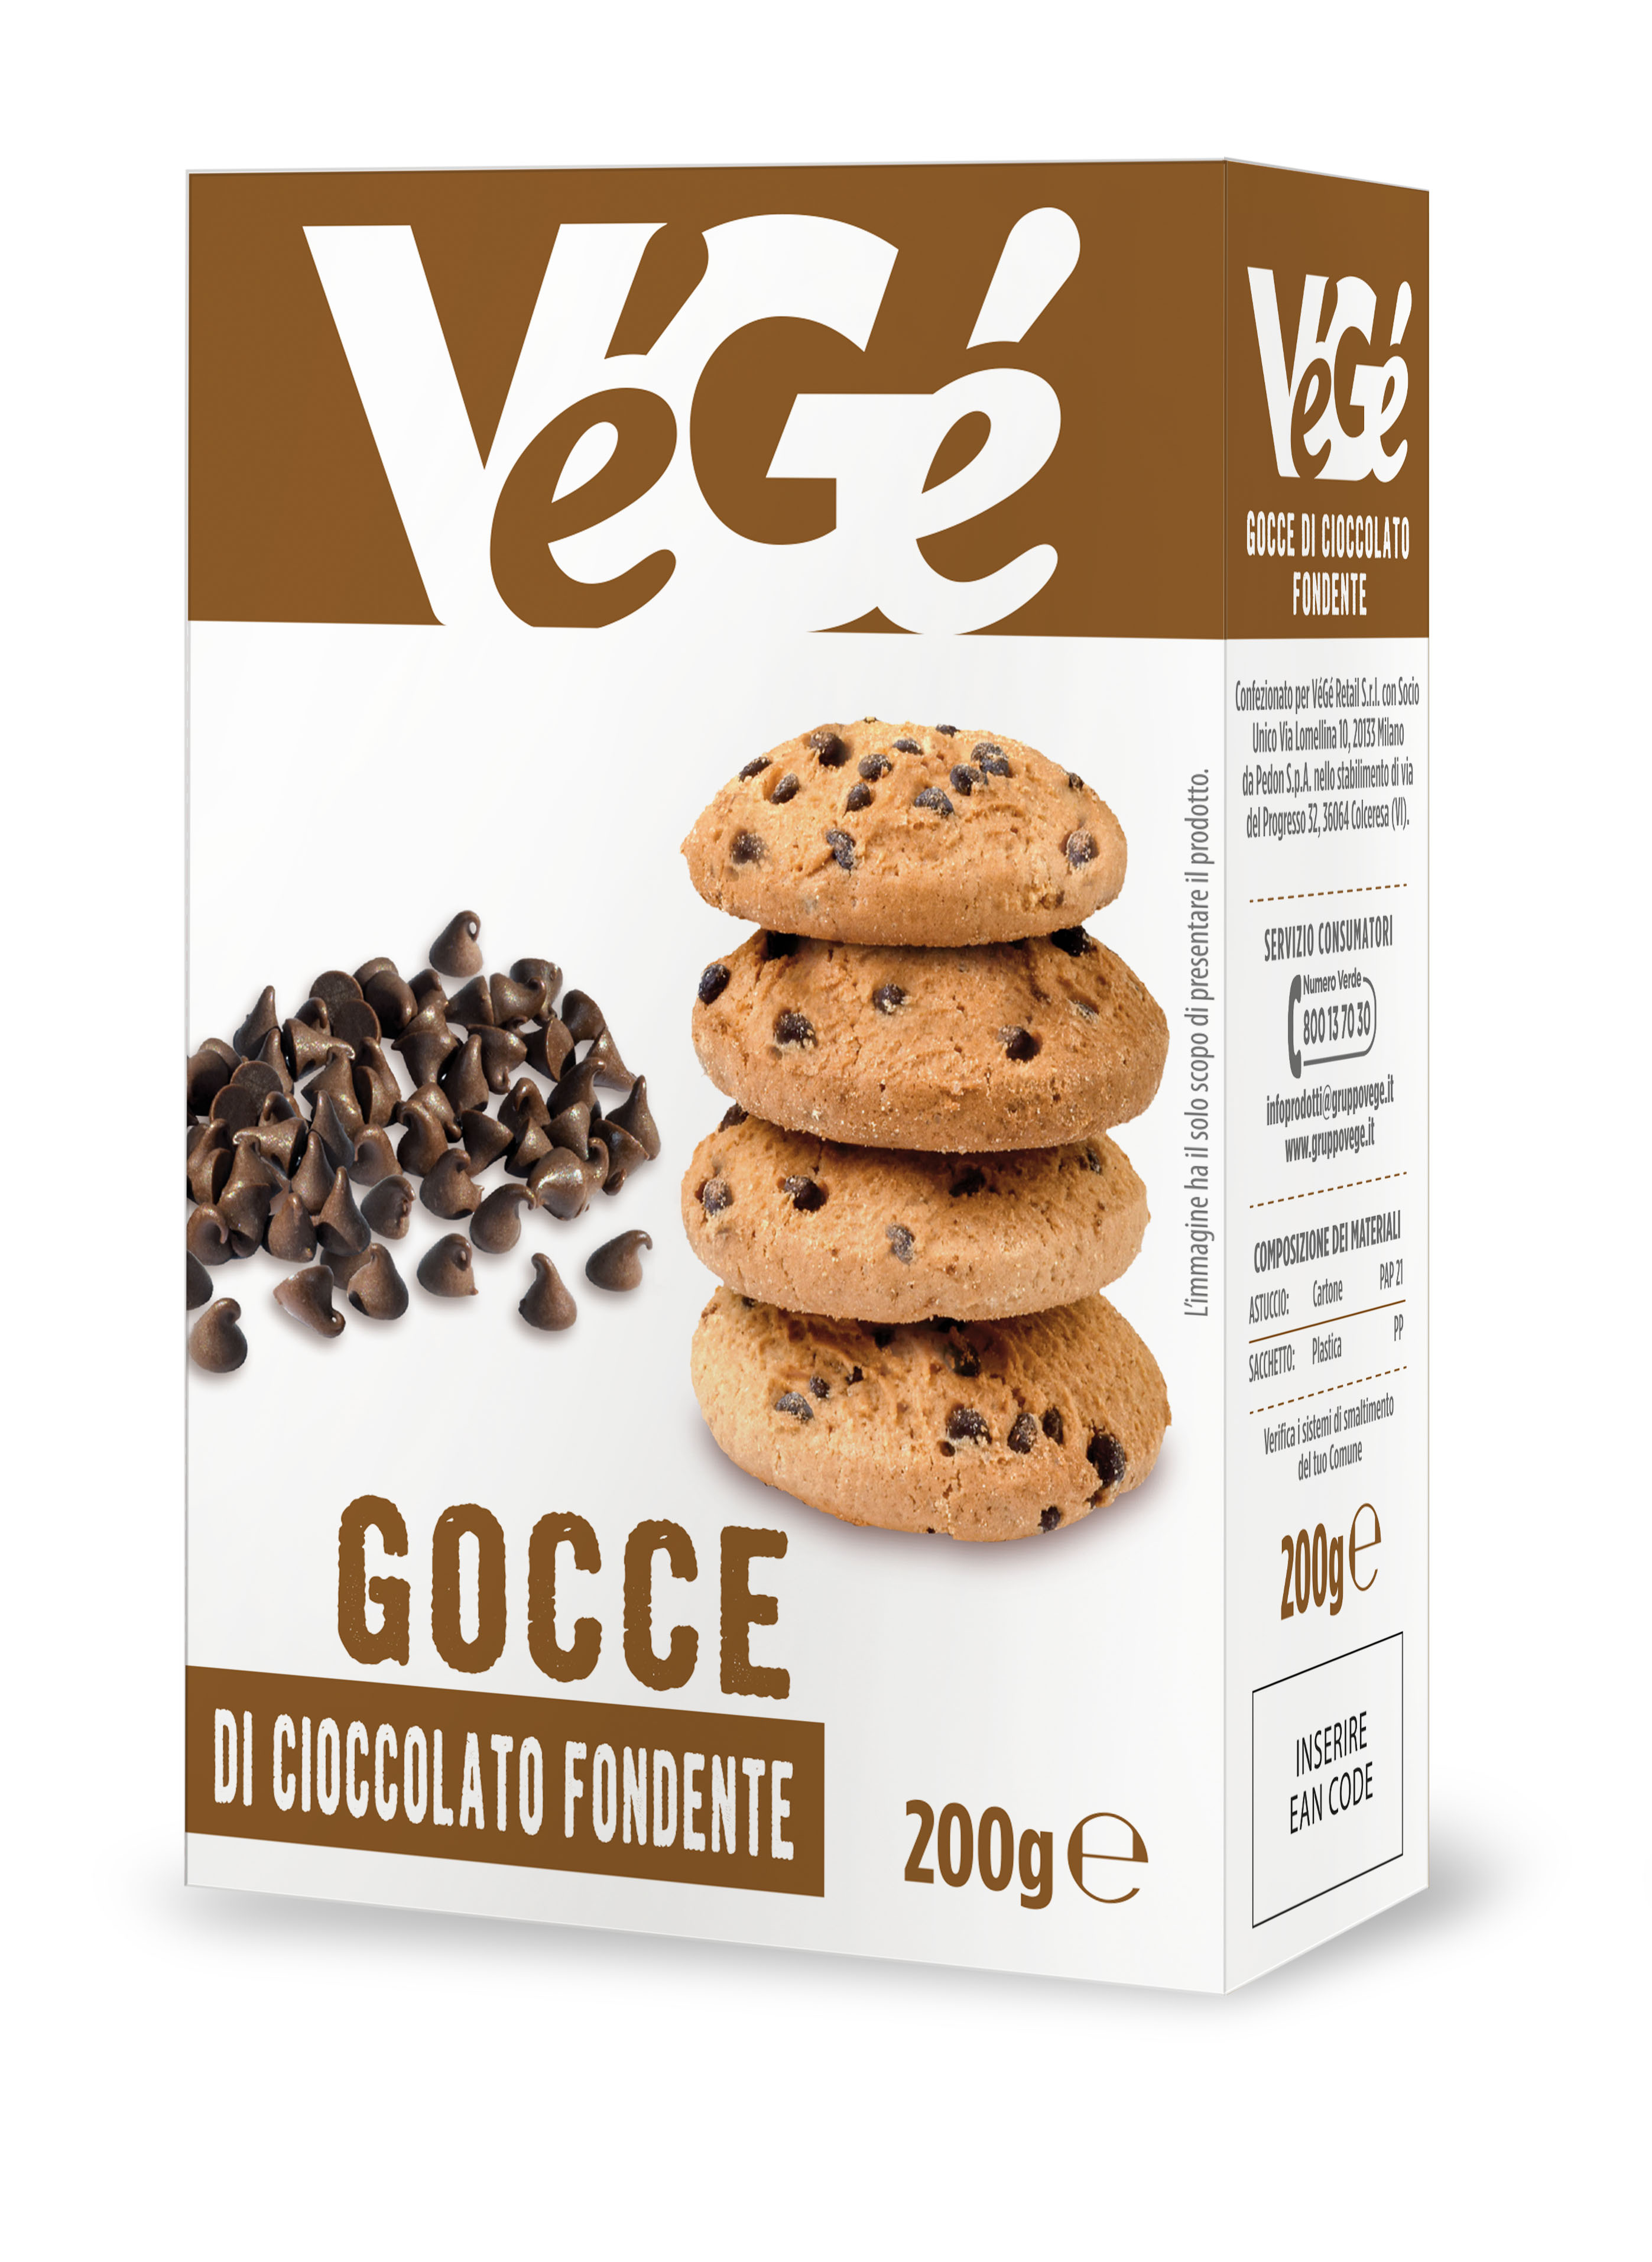 Gocce di cioccolato fondente Vegé GDO (Grande Distribuzione Organizzata)